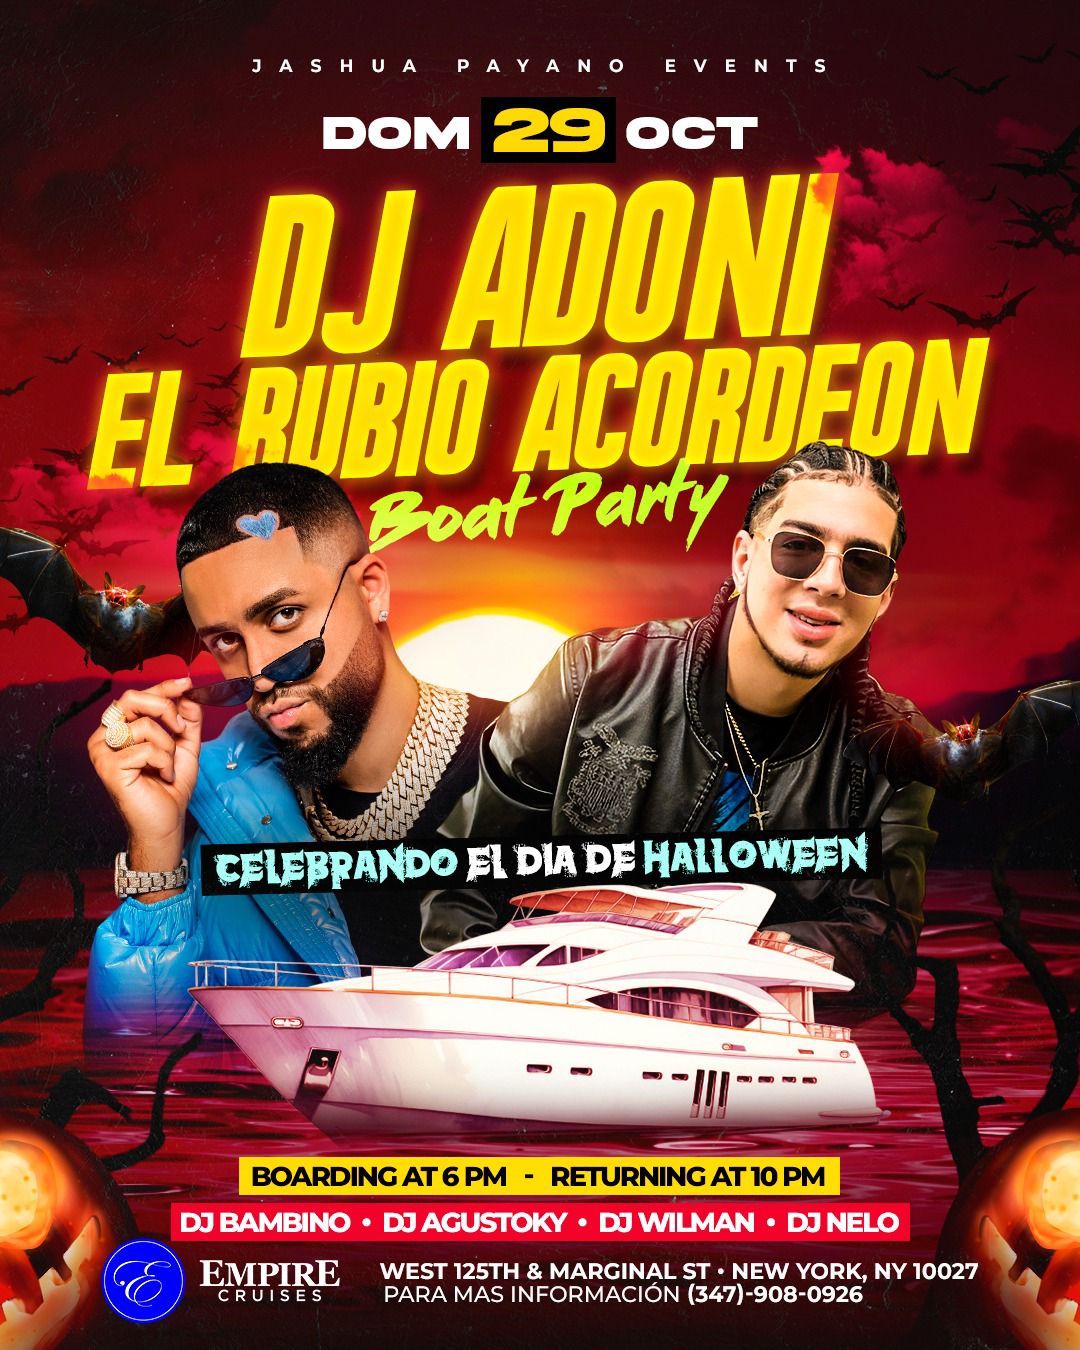 EL RUBIO ACORDEÓN & DJ ADONII - BOAT PARTY